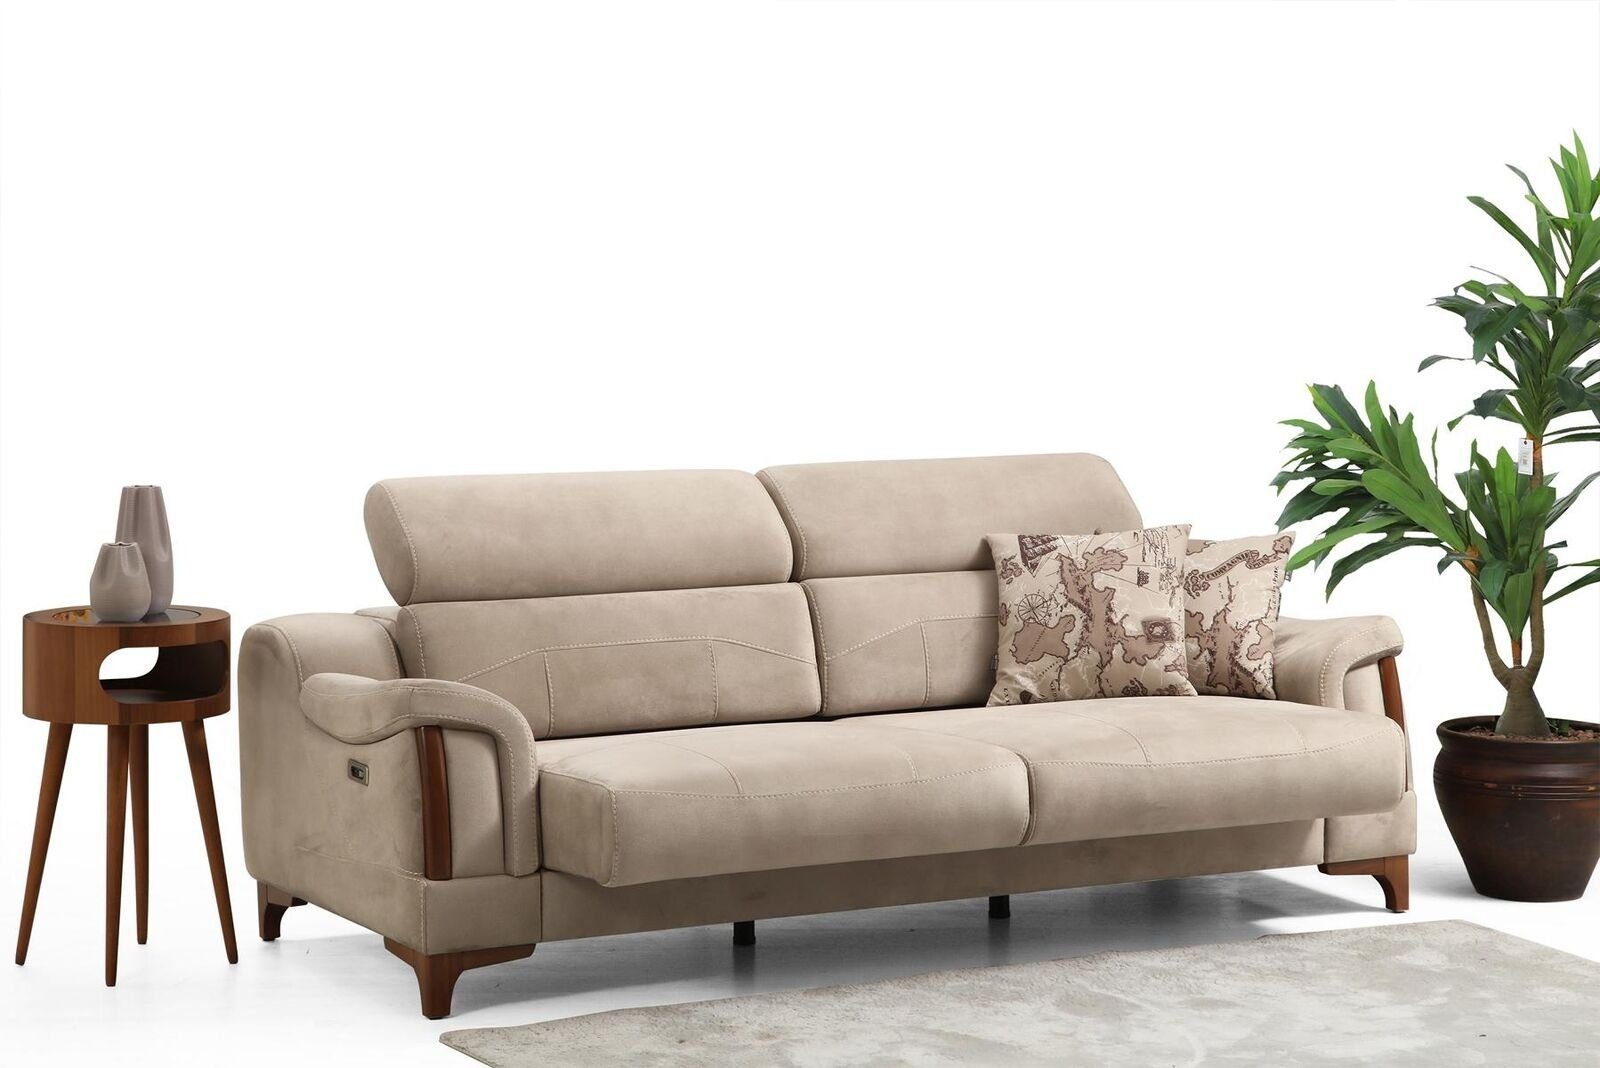 JVmoebel 3-Sitzer Möbel Europa in Textil, Wohnzimmer Teile, Modern Made Sofa 1 Designer Polster